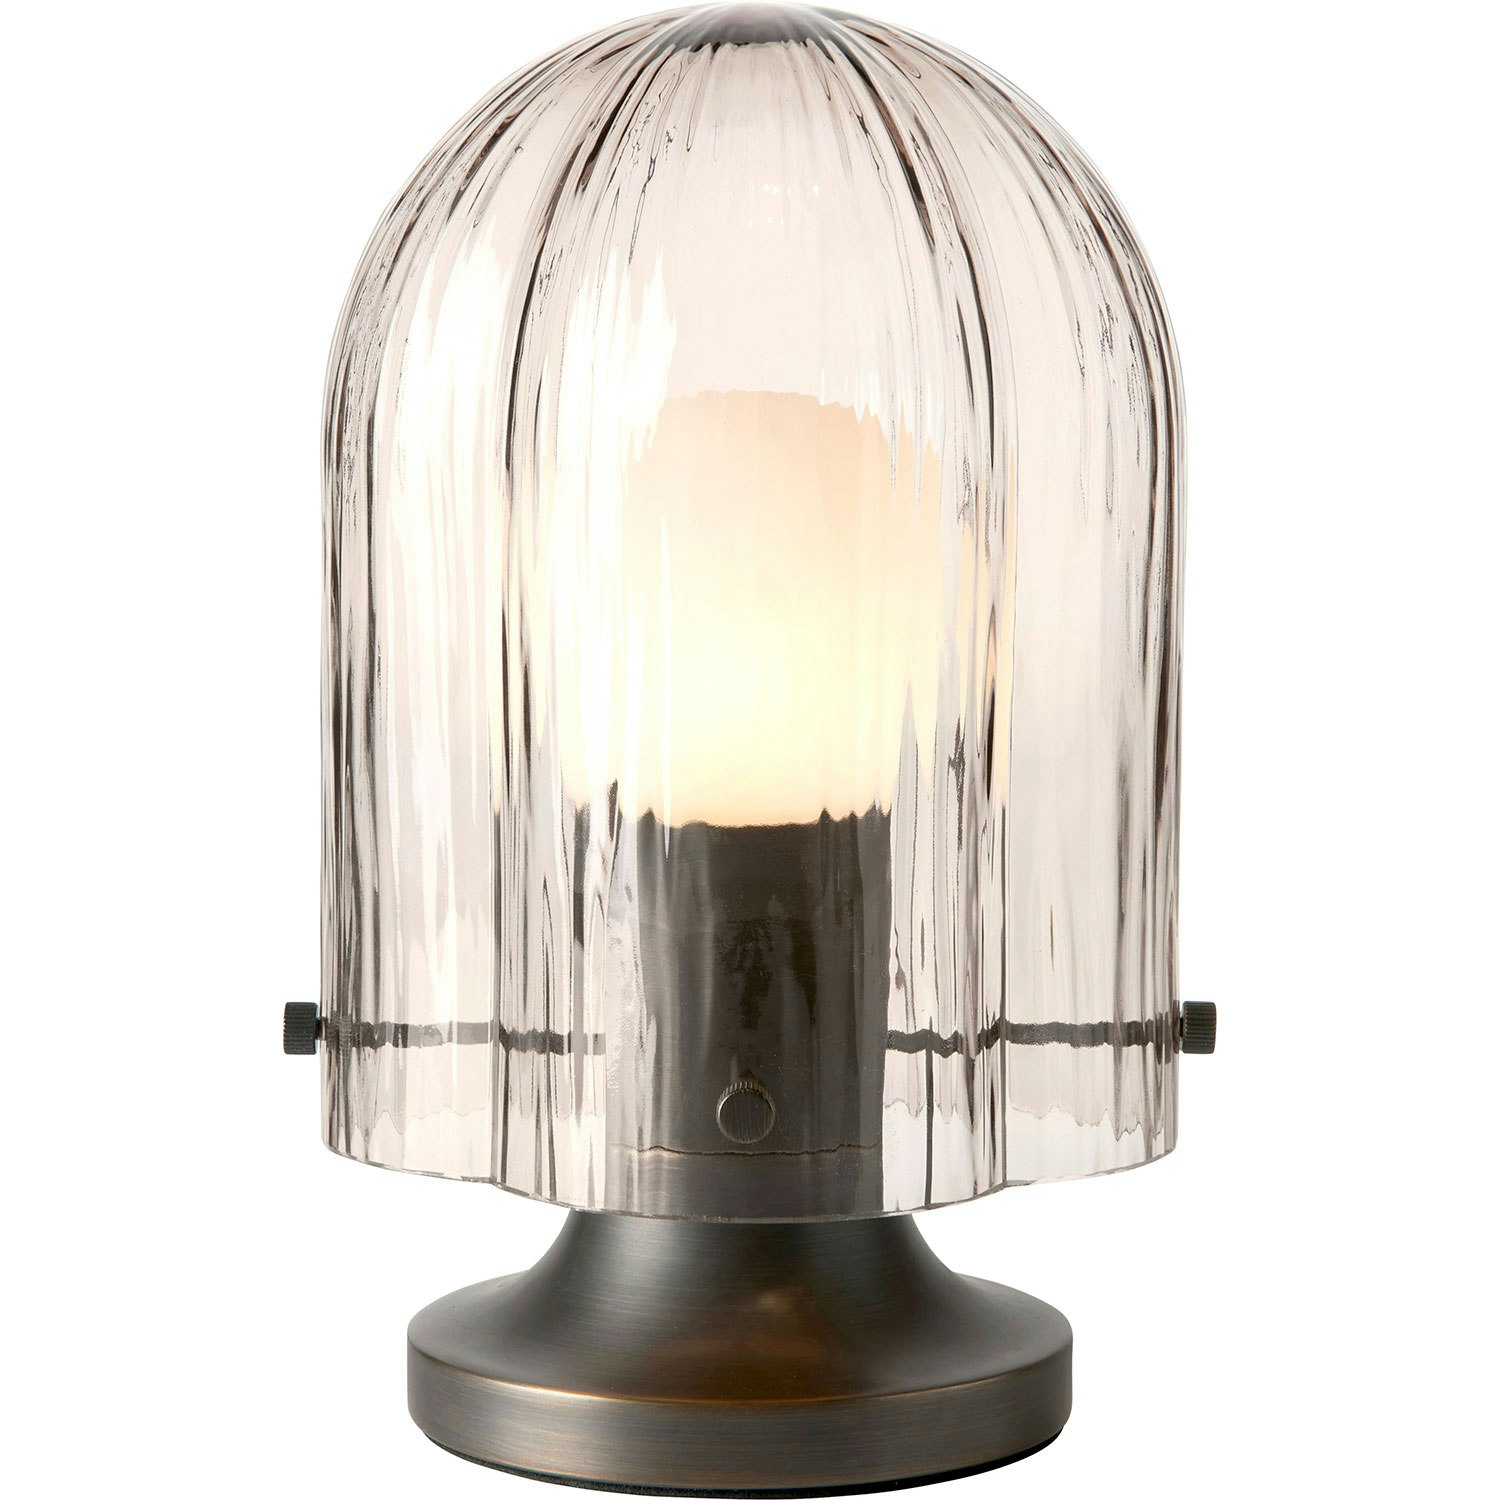 Ampoule LED décorative dimmable E27 G280 ⌀28cm 350lm fumé blanc